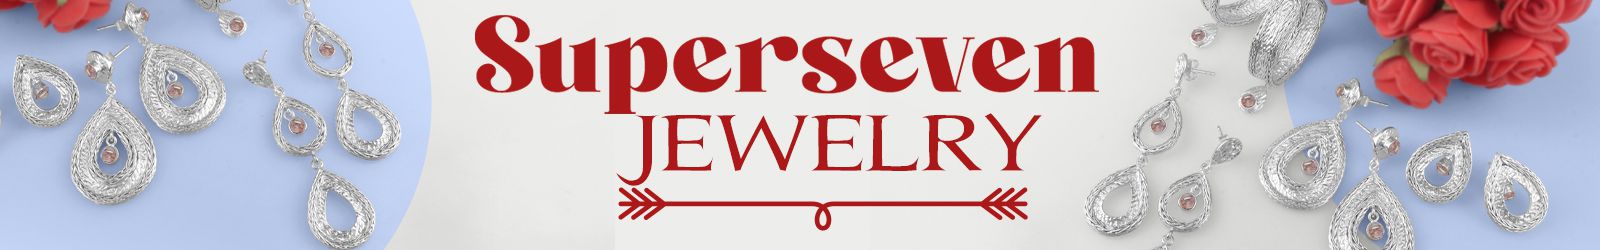 Silver Super Seven Jewelry Wholesale Supplier